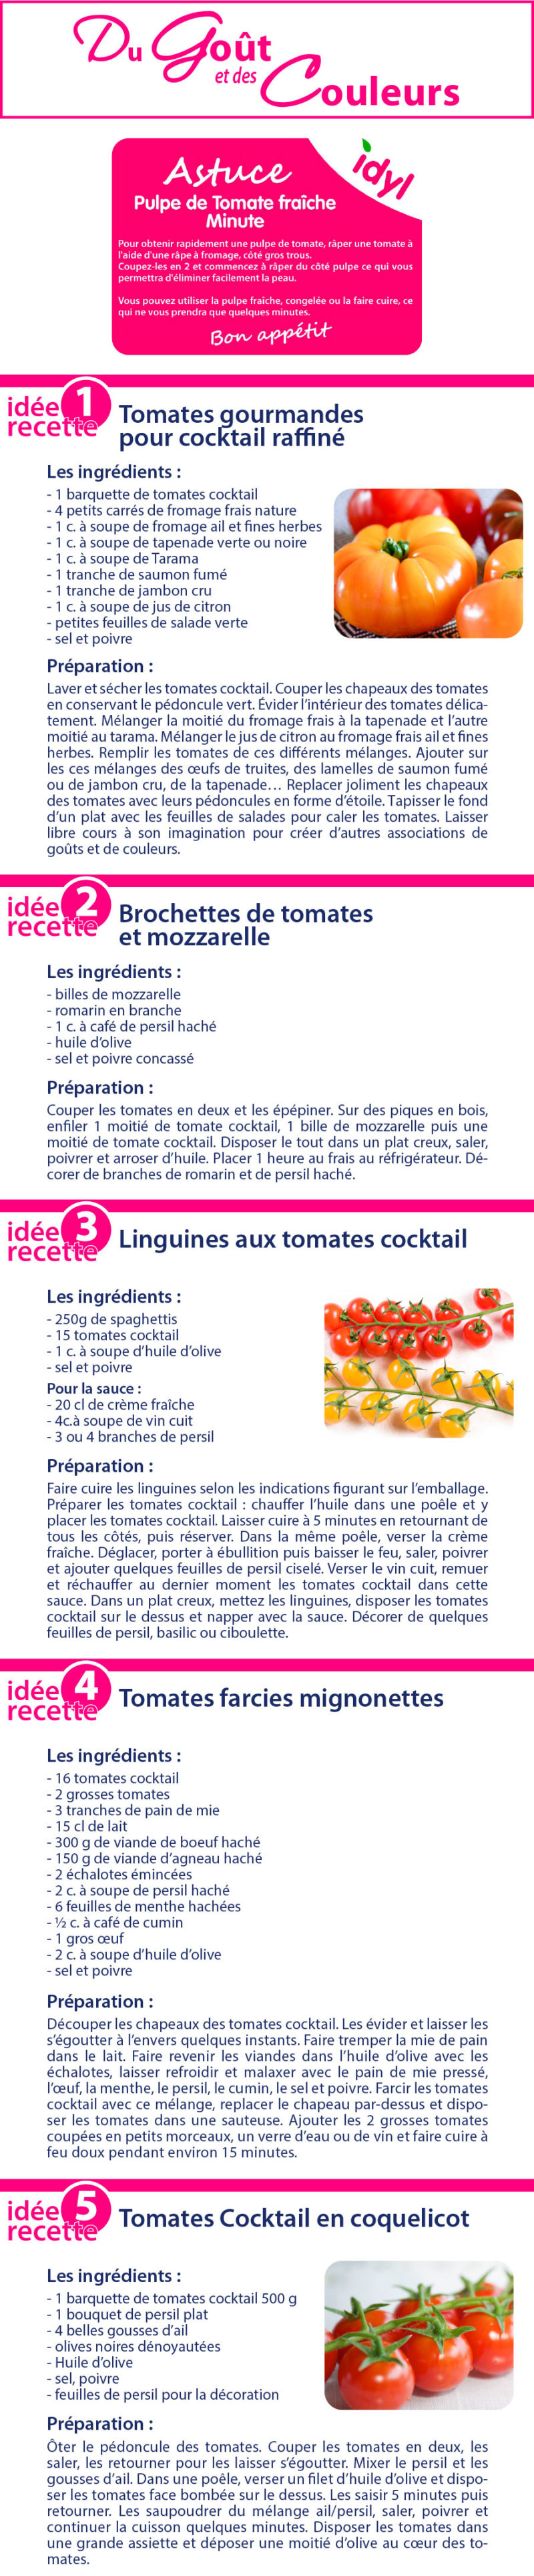 12 idées express pour cuisiner les tomates cerise - trucs et astuces - Idyl